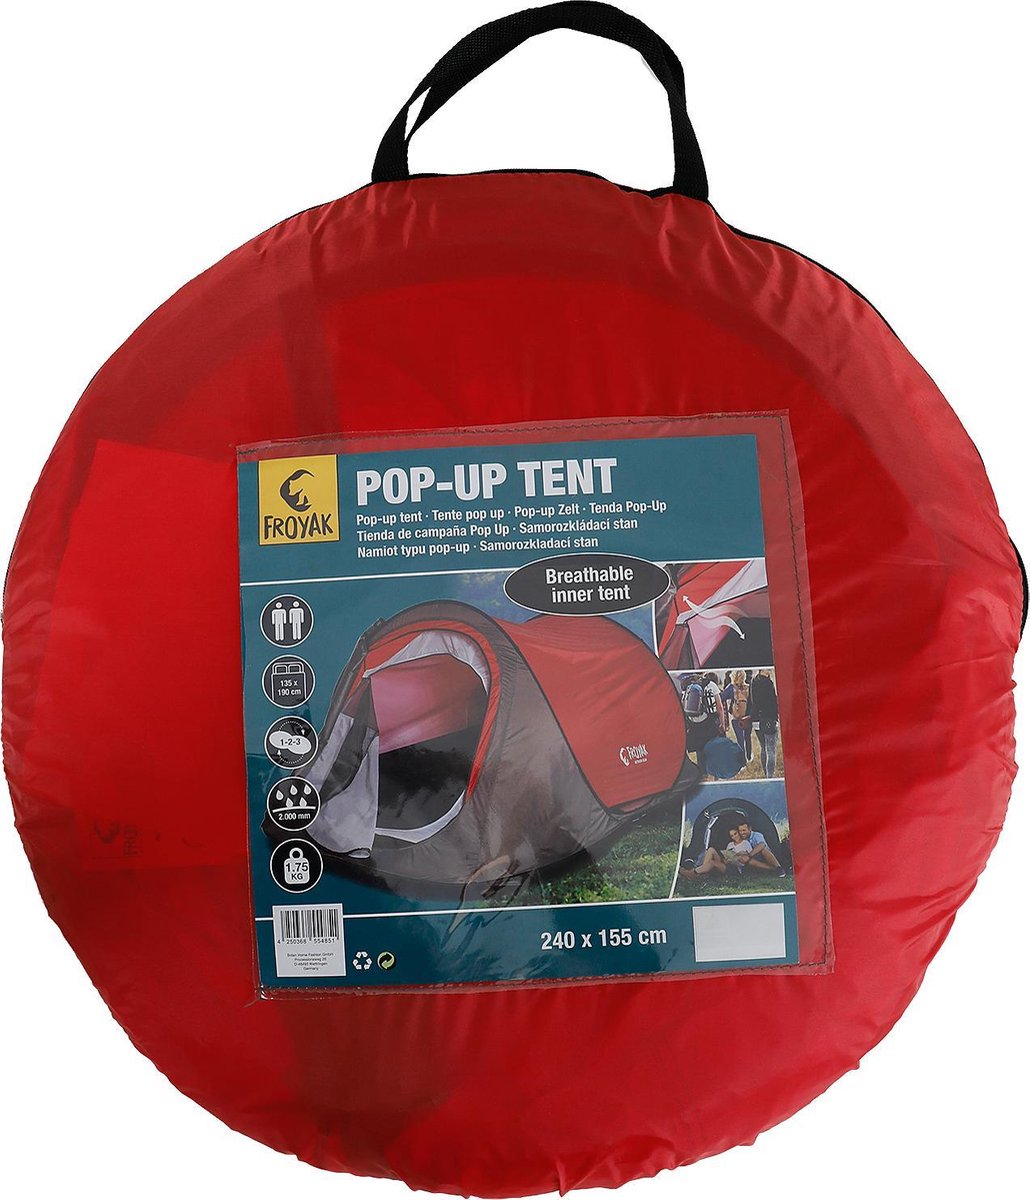 Tente pop-up Froyak | bol.com